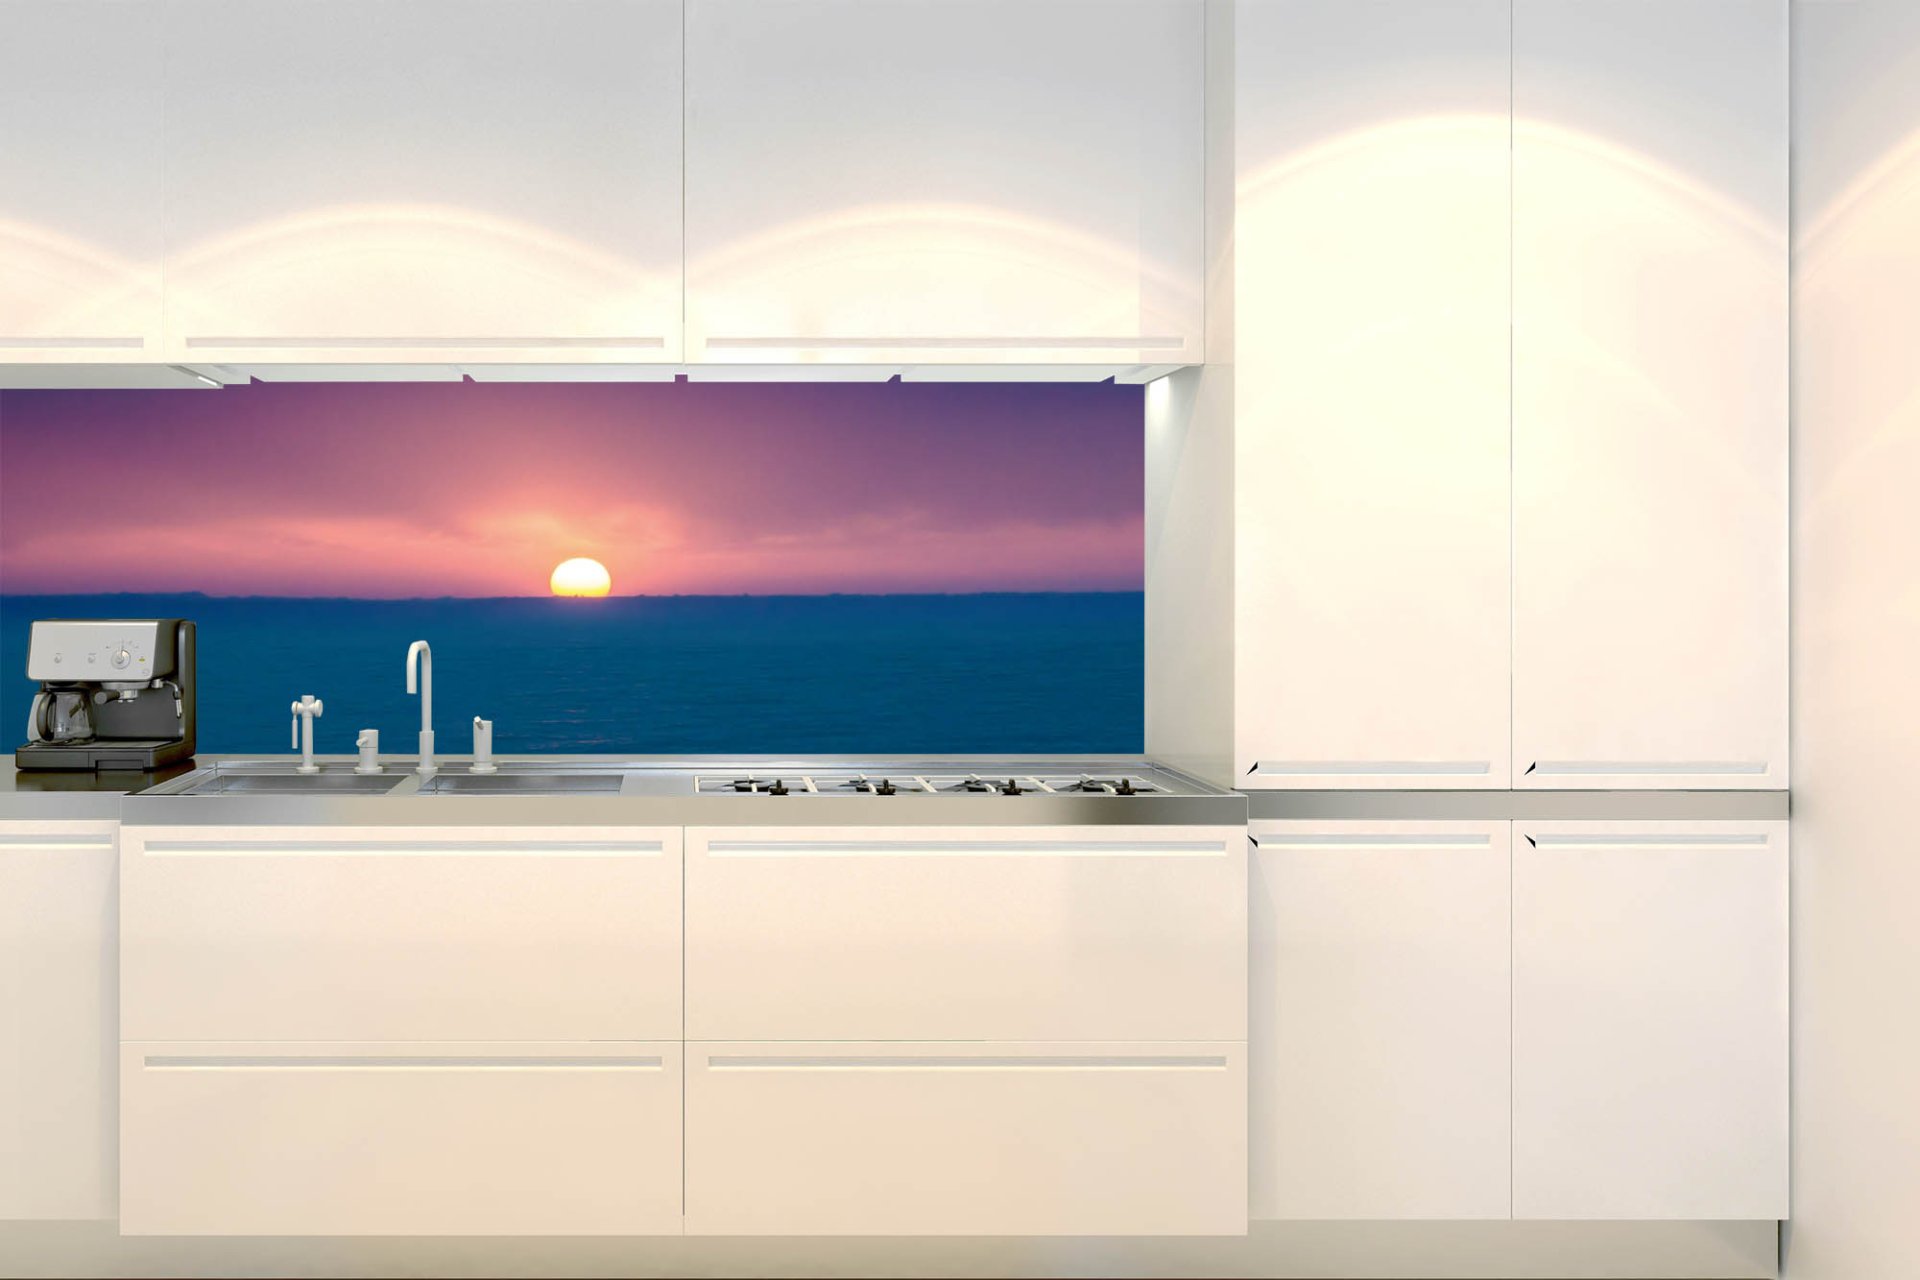 Samolepicí fototapeta na kuchyňskou linku Východ slunce KI-180-138 / Fototapety do kuchyně Dimex (180 x 60 cm)